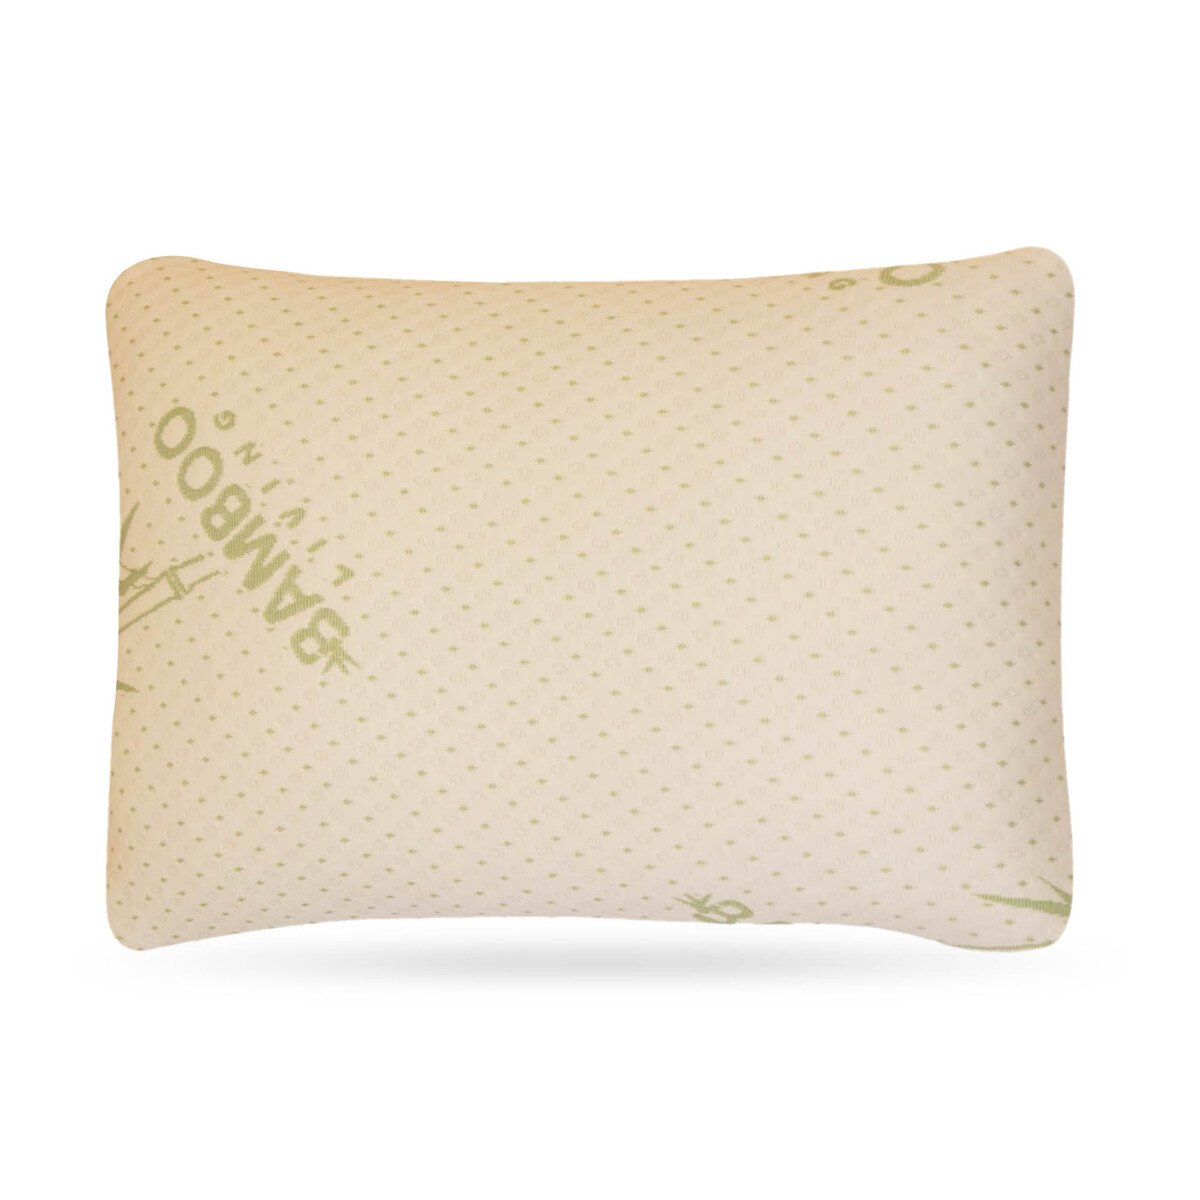 Maple Leaf Memory Foam Pillow 40x60cm White Color